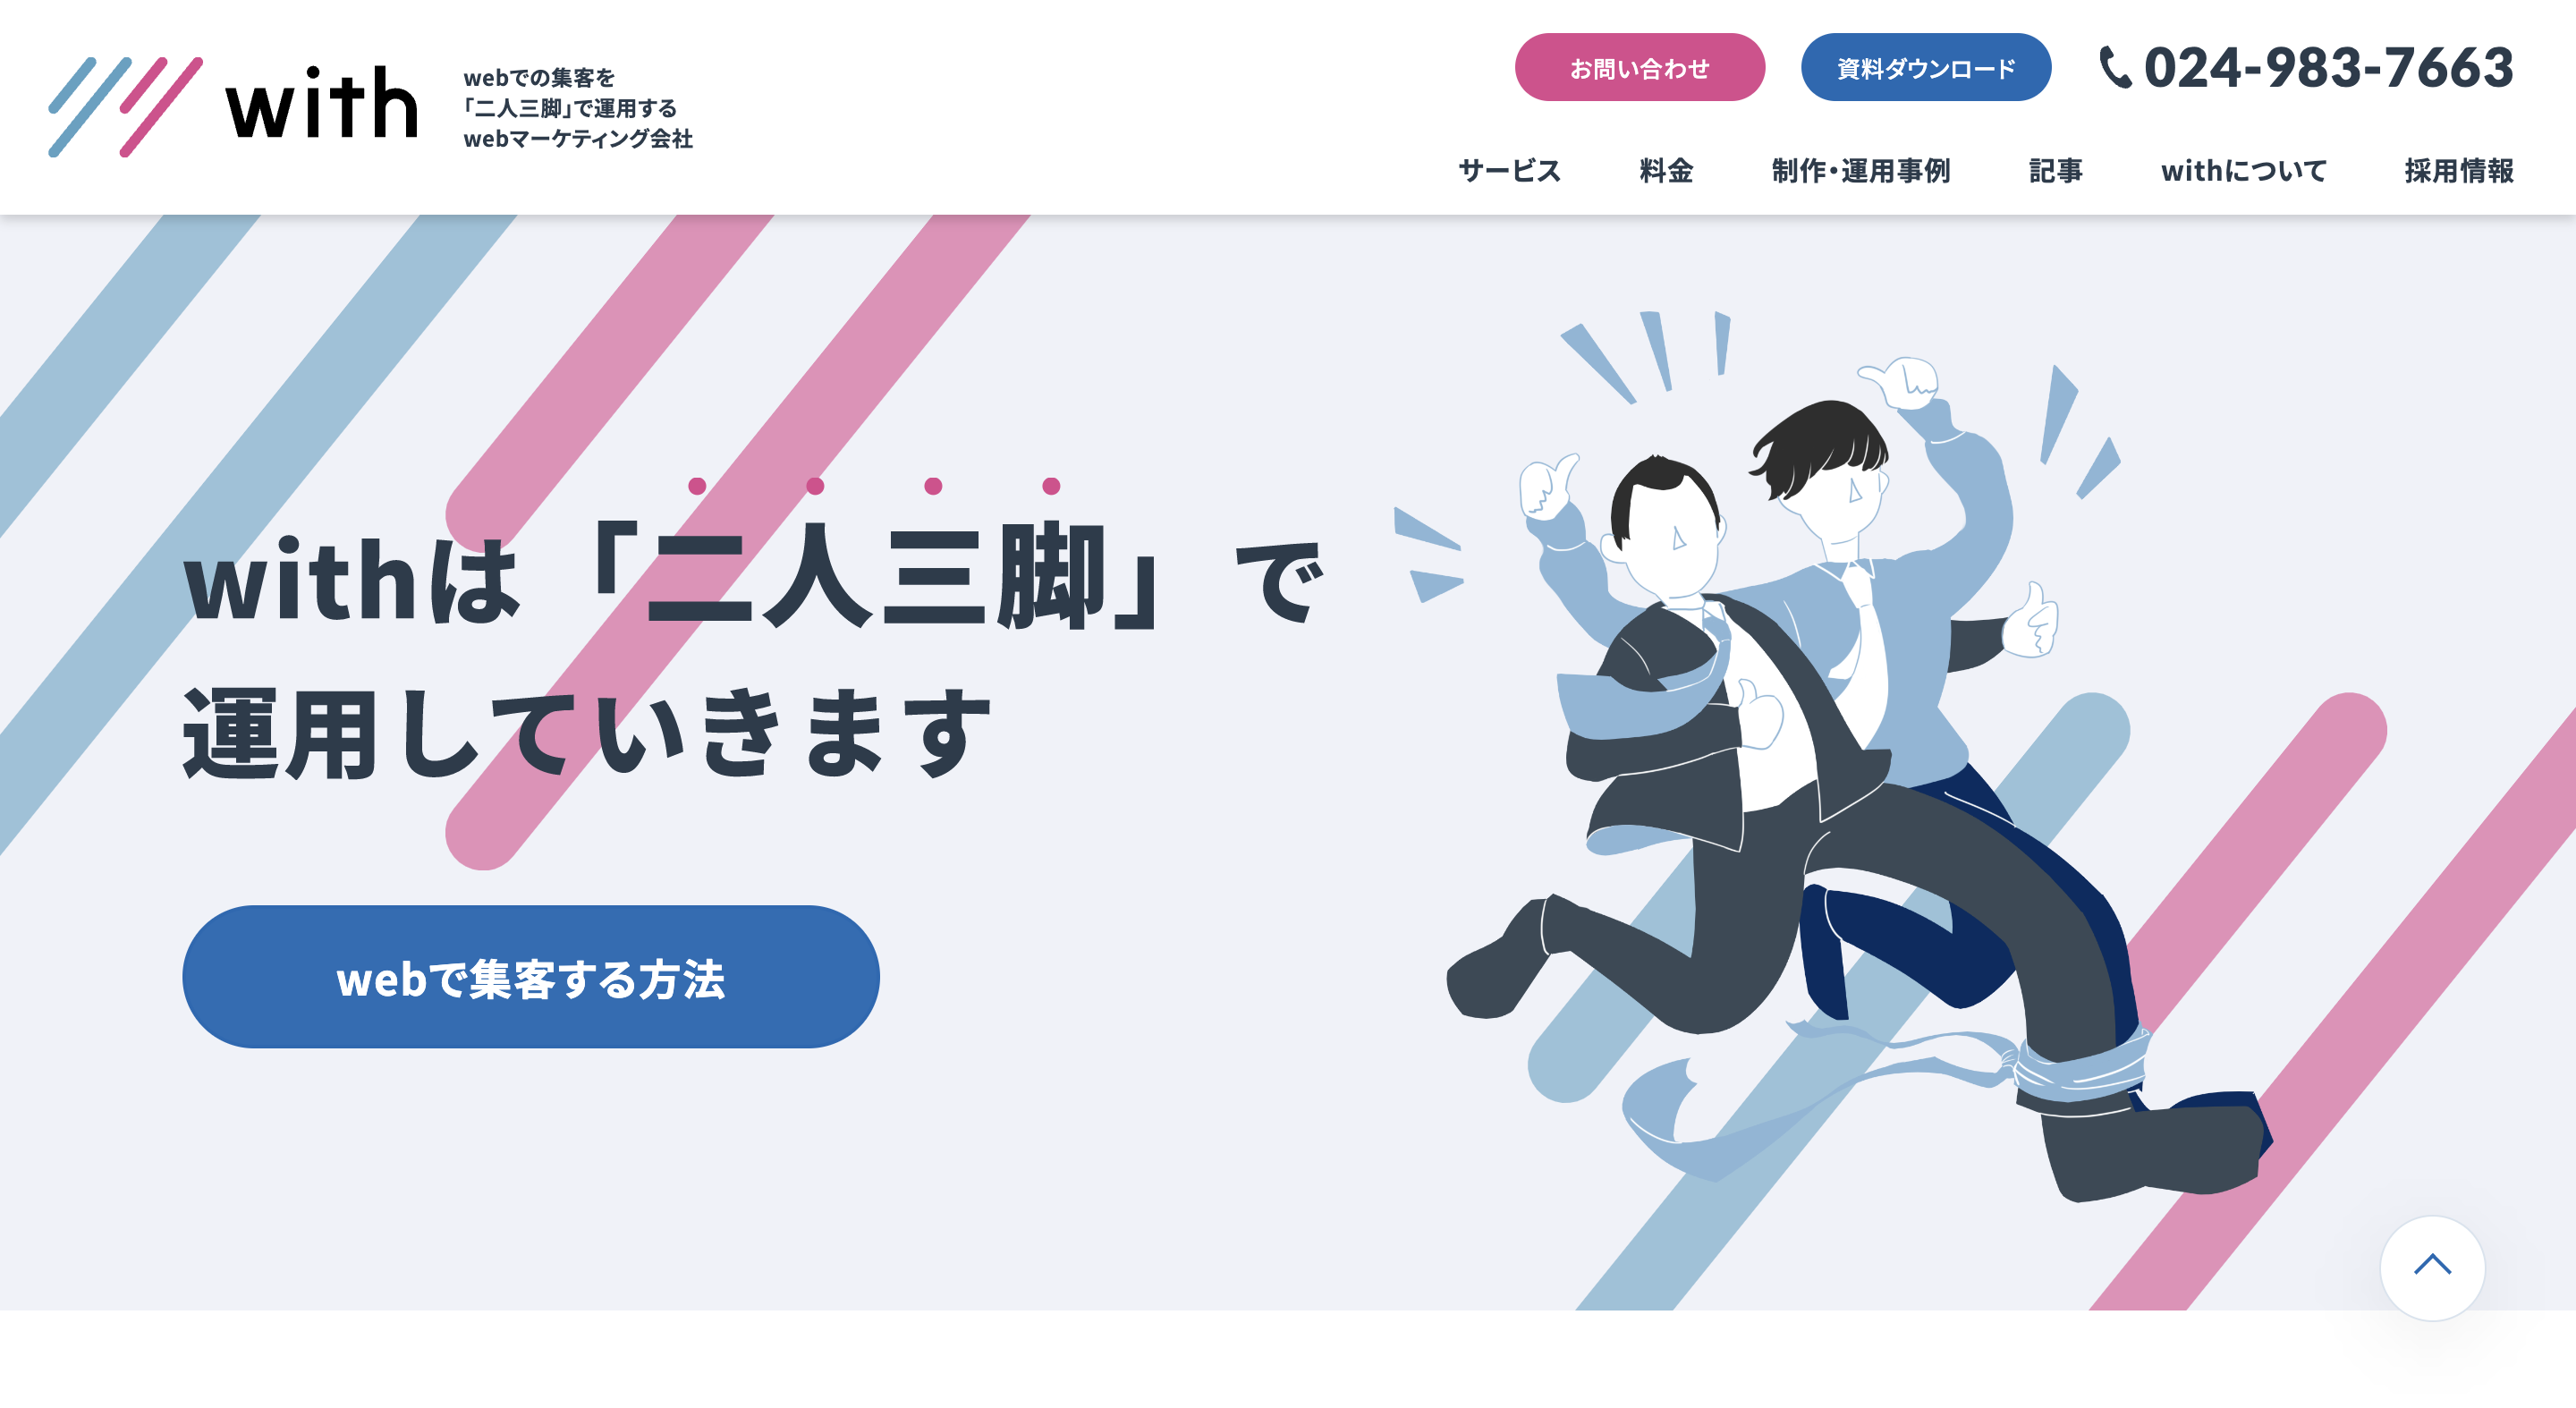 withの株式会社スパーダ・デザイン:Web広告サービス